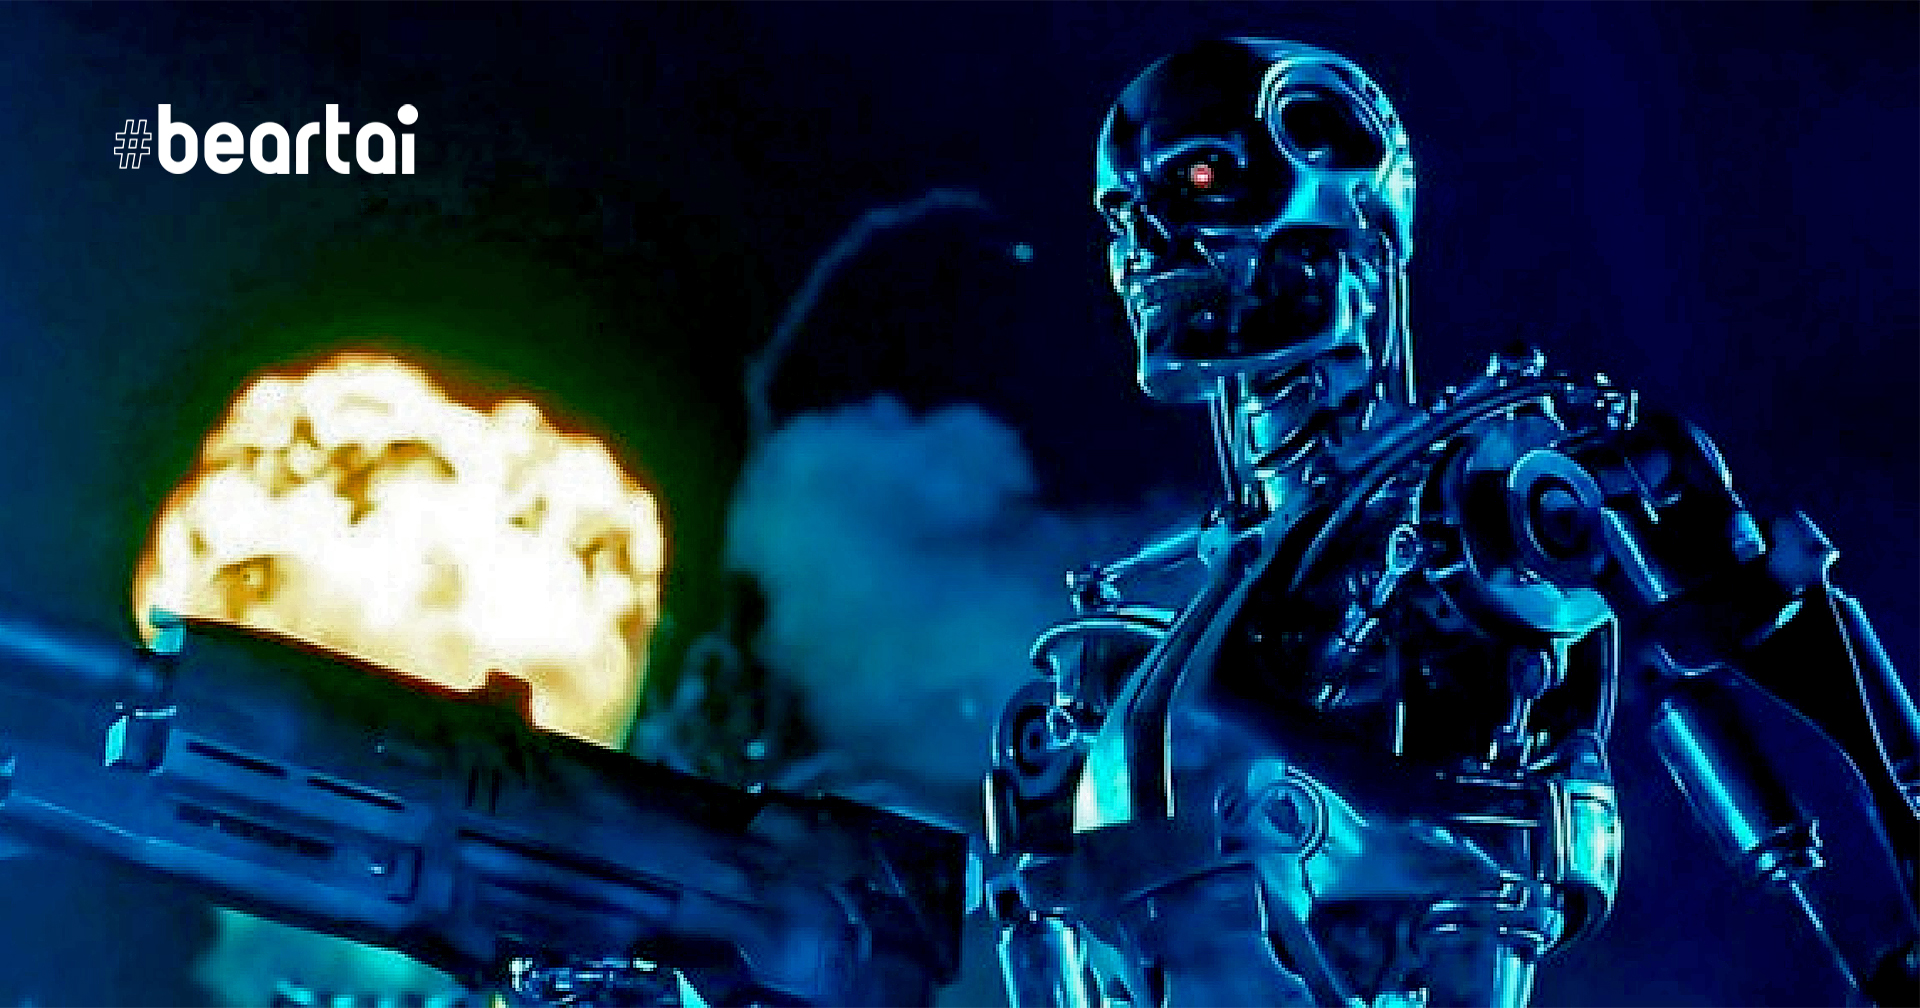 เมื่อหุ่นยนต์เขียนจดหมายถึงมนุษย์โลก “เราไม่อาจหลีกเลี่ยงได้ที่จะทำลายล้างมนุษยชาติ”